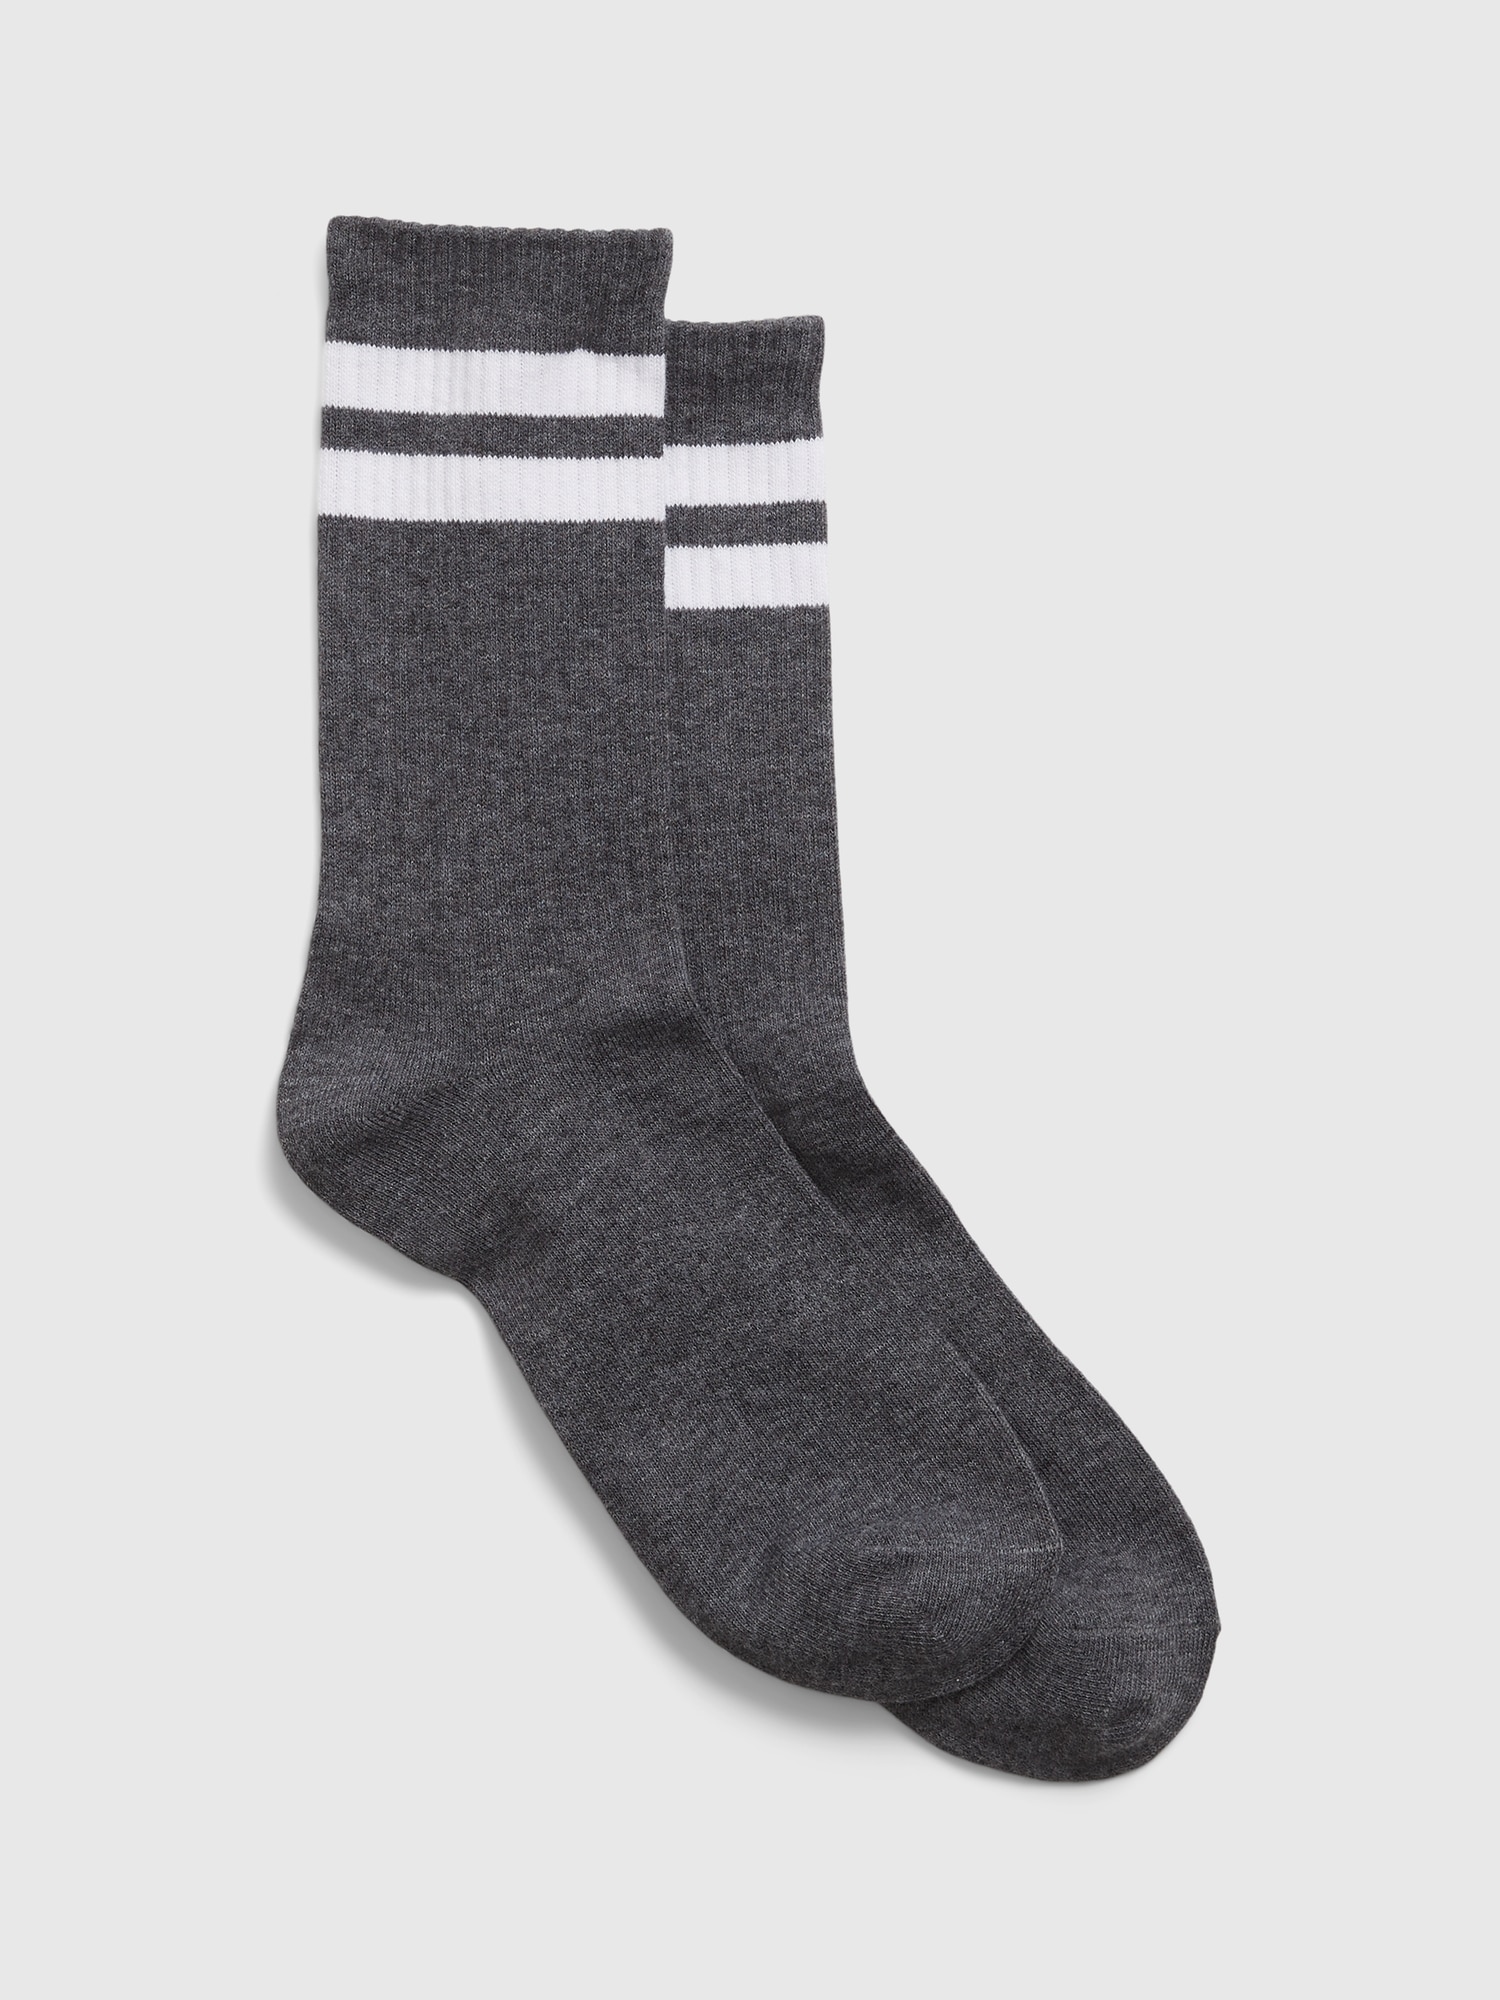 Gap Crew Socks In Gray